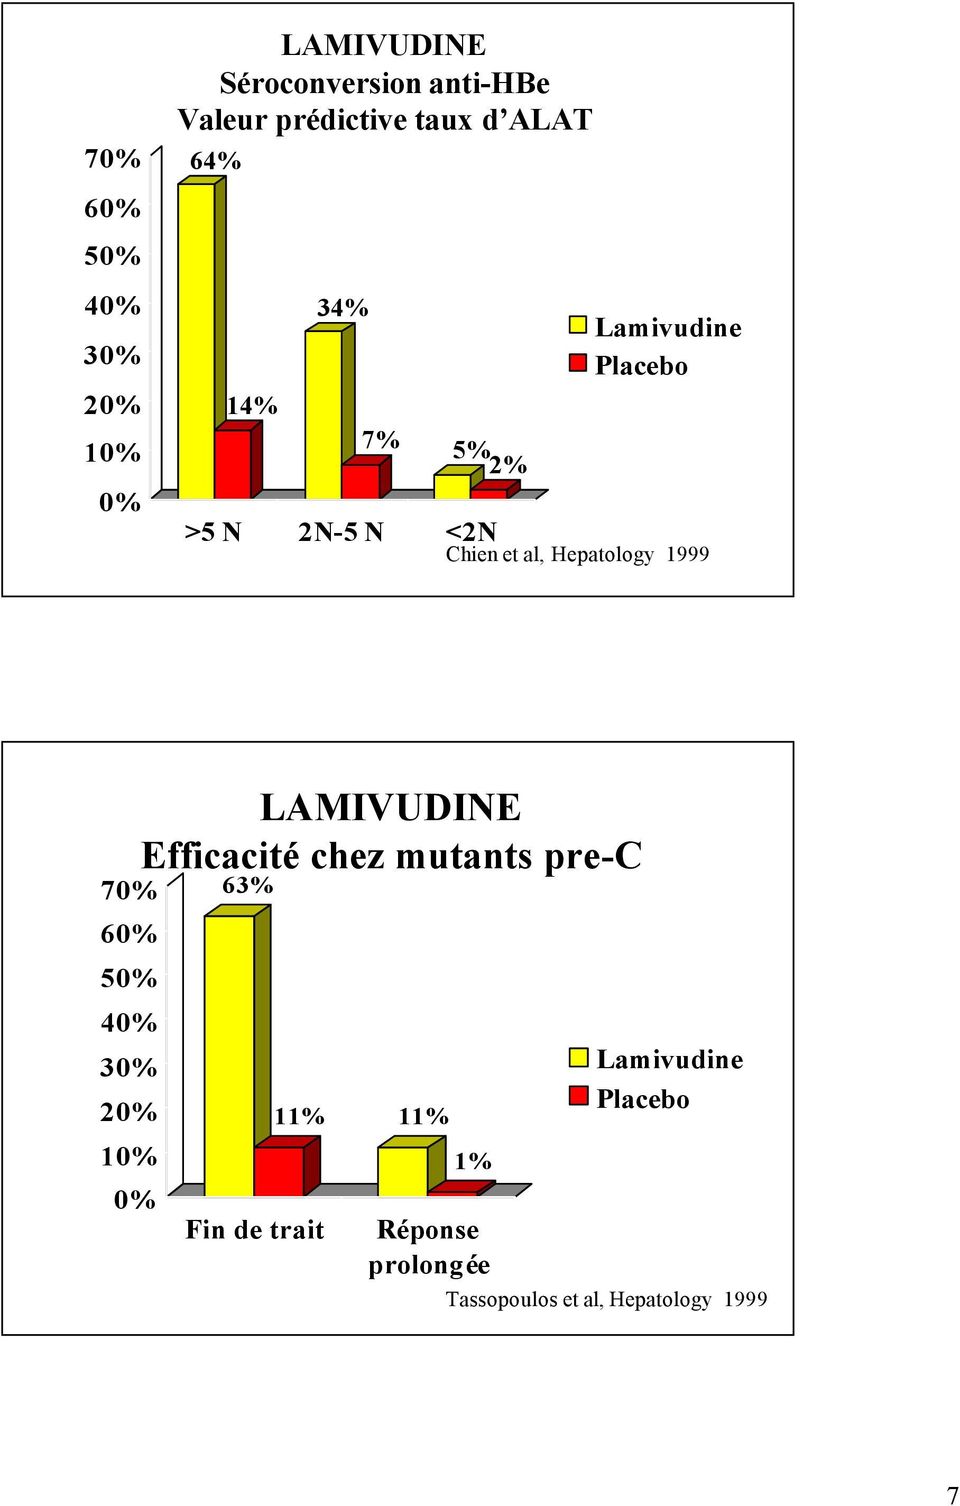 1999 7 6 5 4 LAMIVUDINE Efficacité chez mutants pre-c 63% Fin de trait 11%